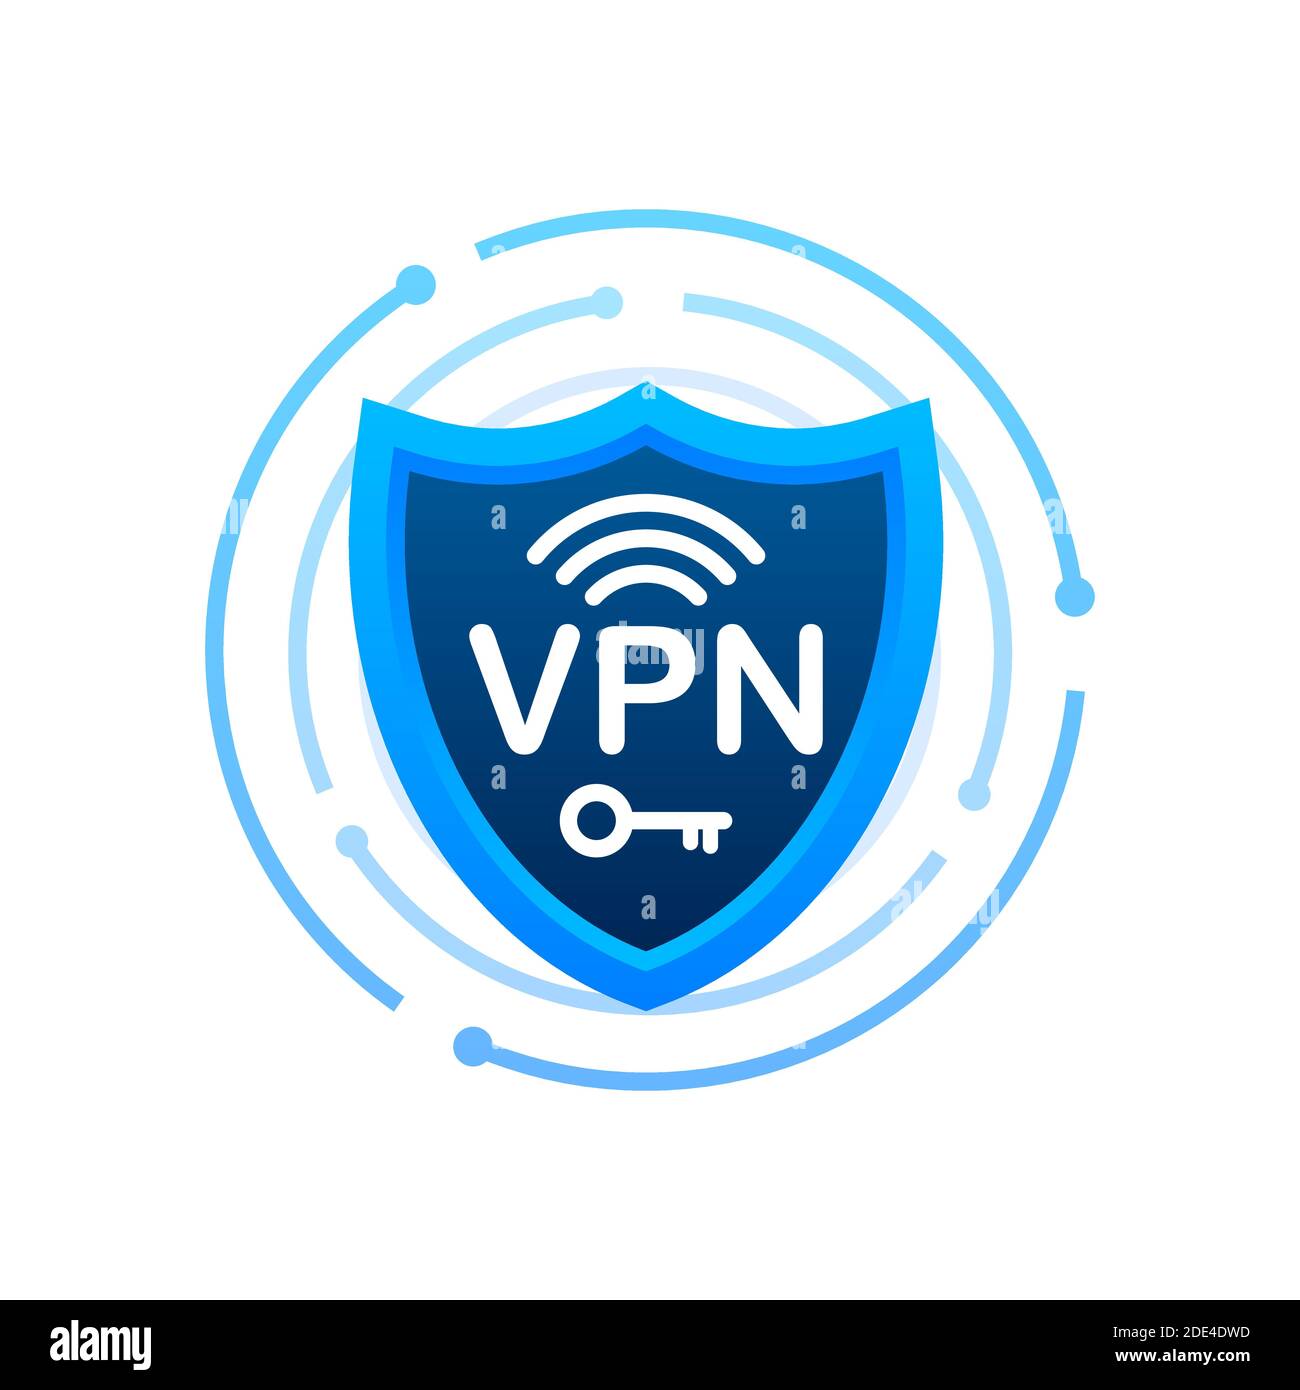 Sicheres VPN-Verbindungskonzept. Übersicht über die Konnektivität des virtuellen privaten Netzwerks. Vektorgrafik. Stock Vektor